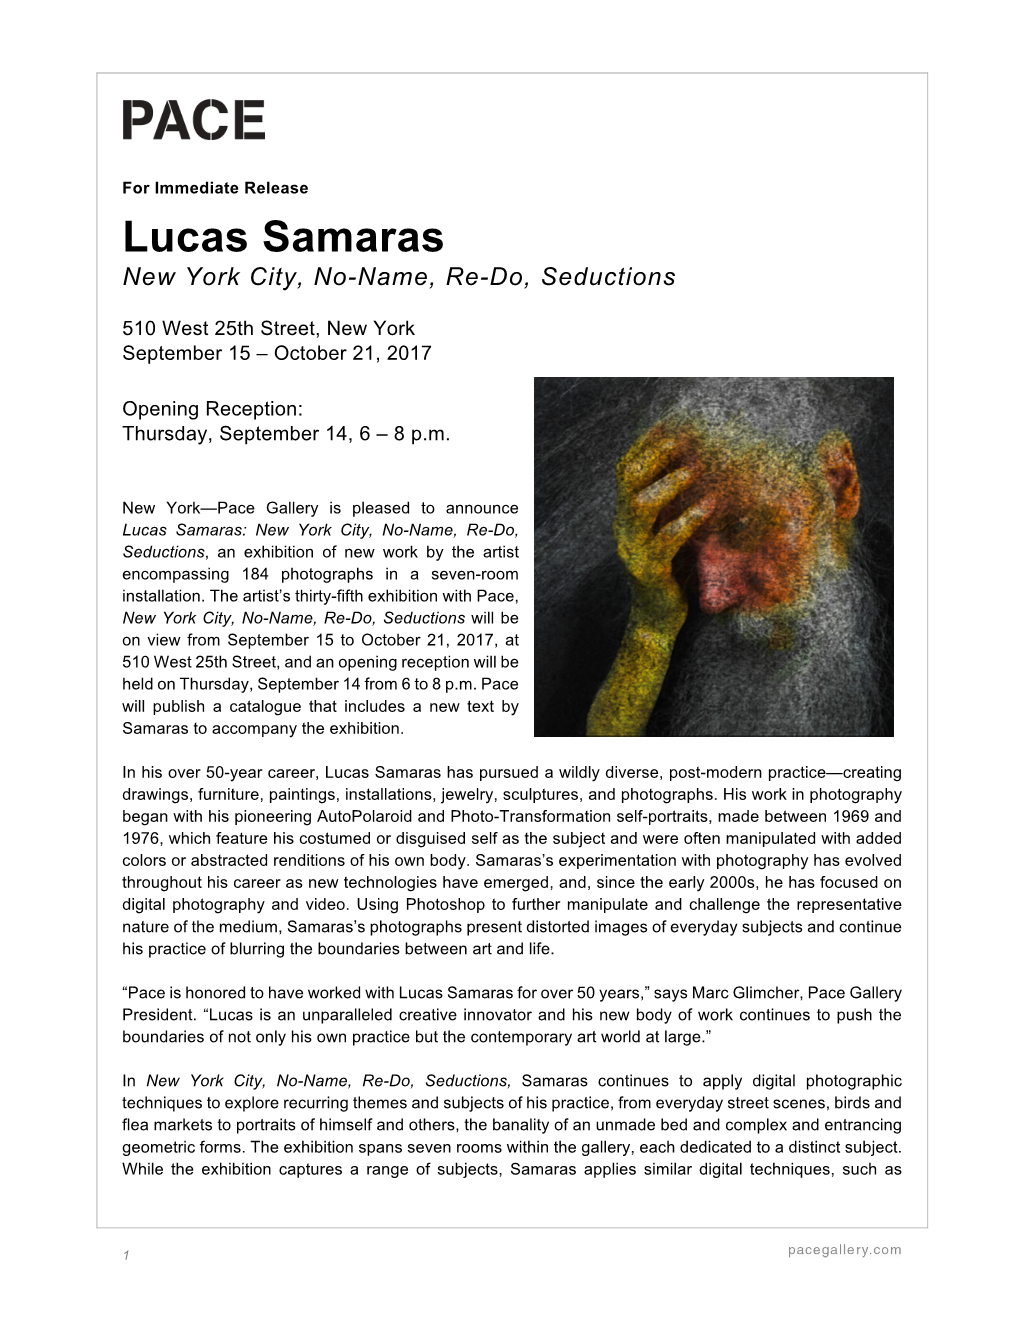 Lucas Samaras New York City, No-Name, Re-Do, Seductions